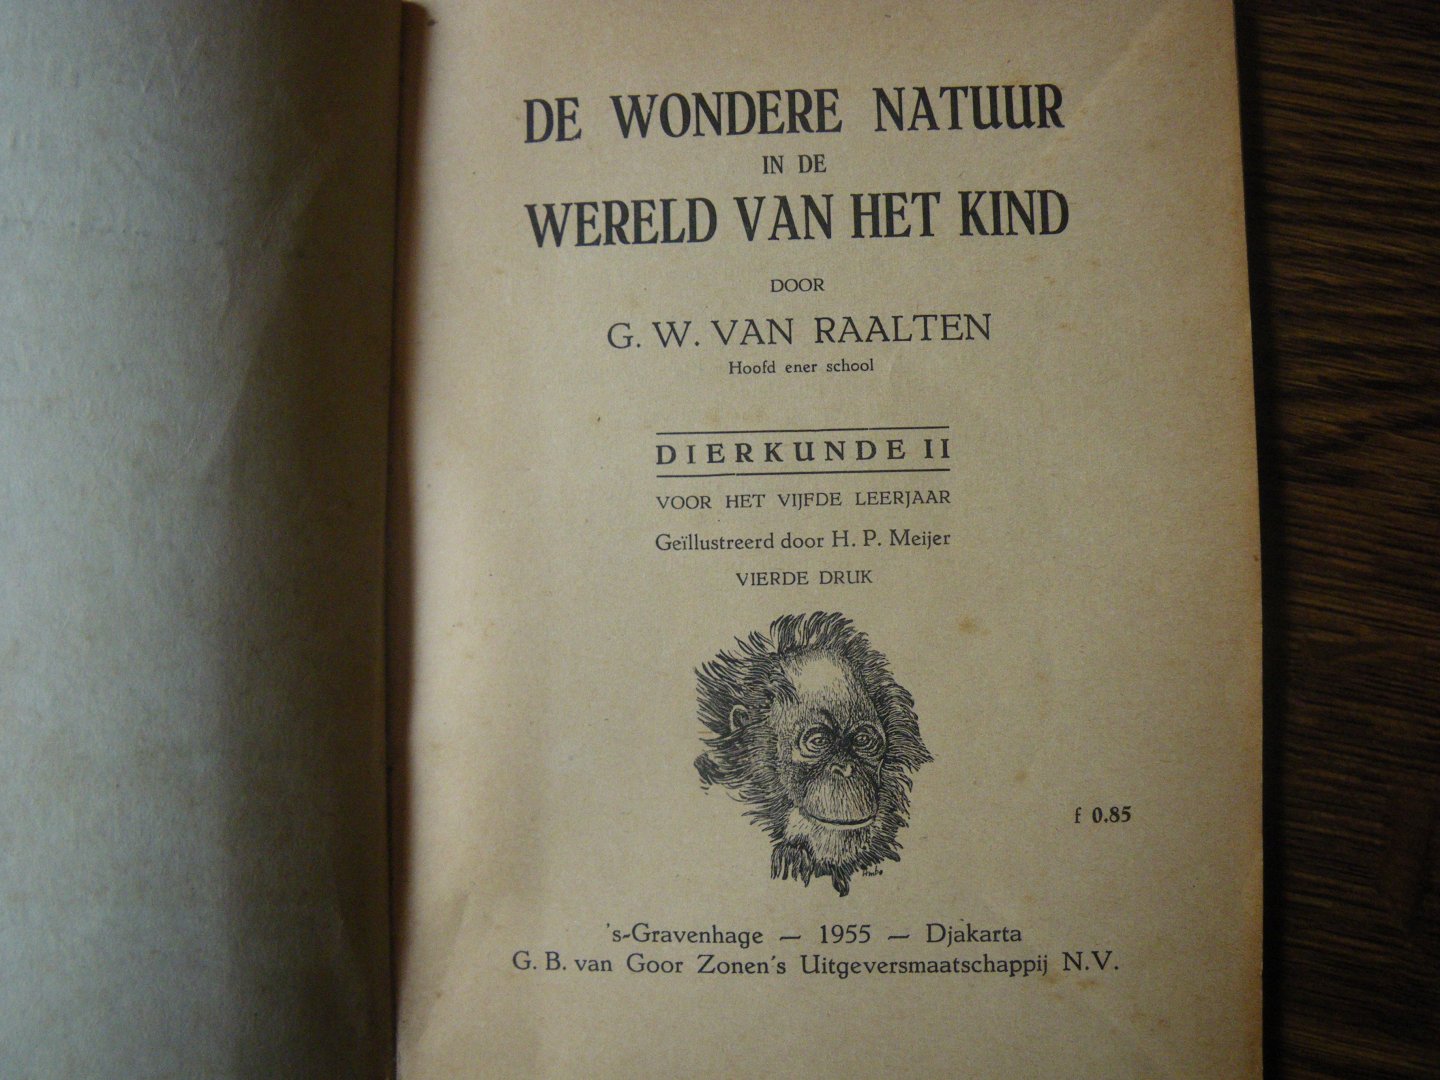 Raalten, G.W. van - Wondere natuur in de wereld van het kind, Dierkunde dl 2.